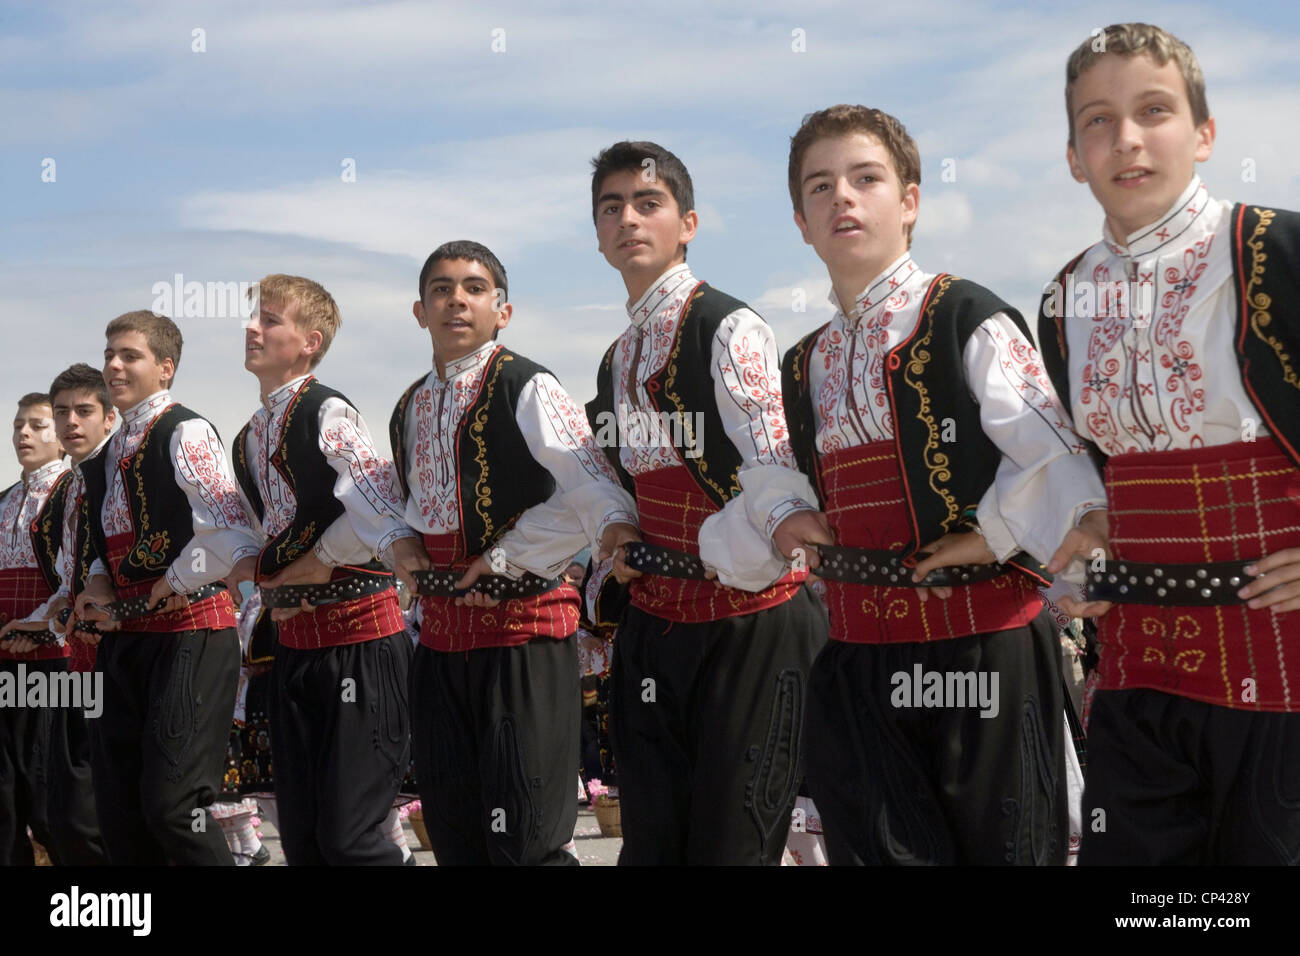 Bulgaria - Kazanl? K. Festival of Roses. Children in traditional ...